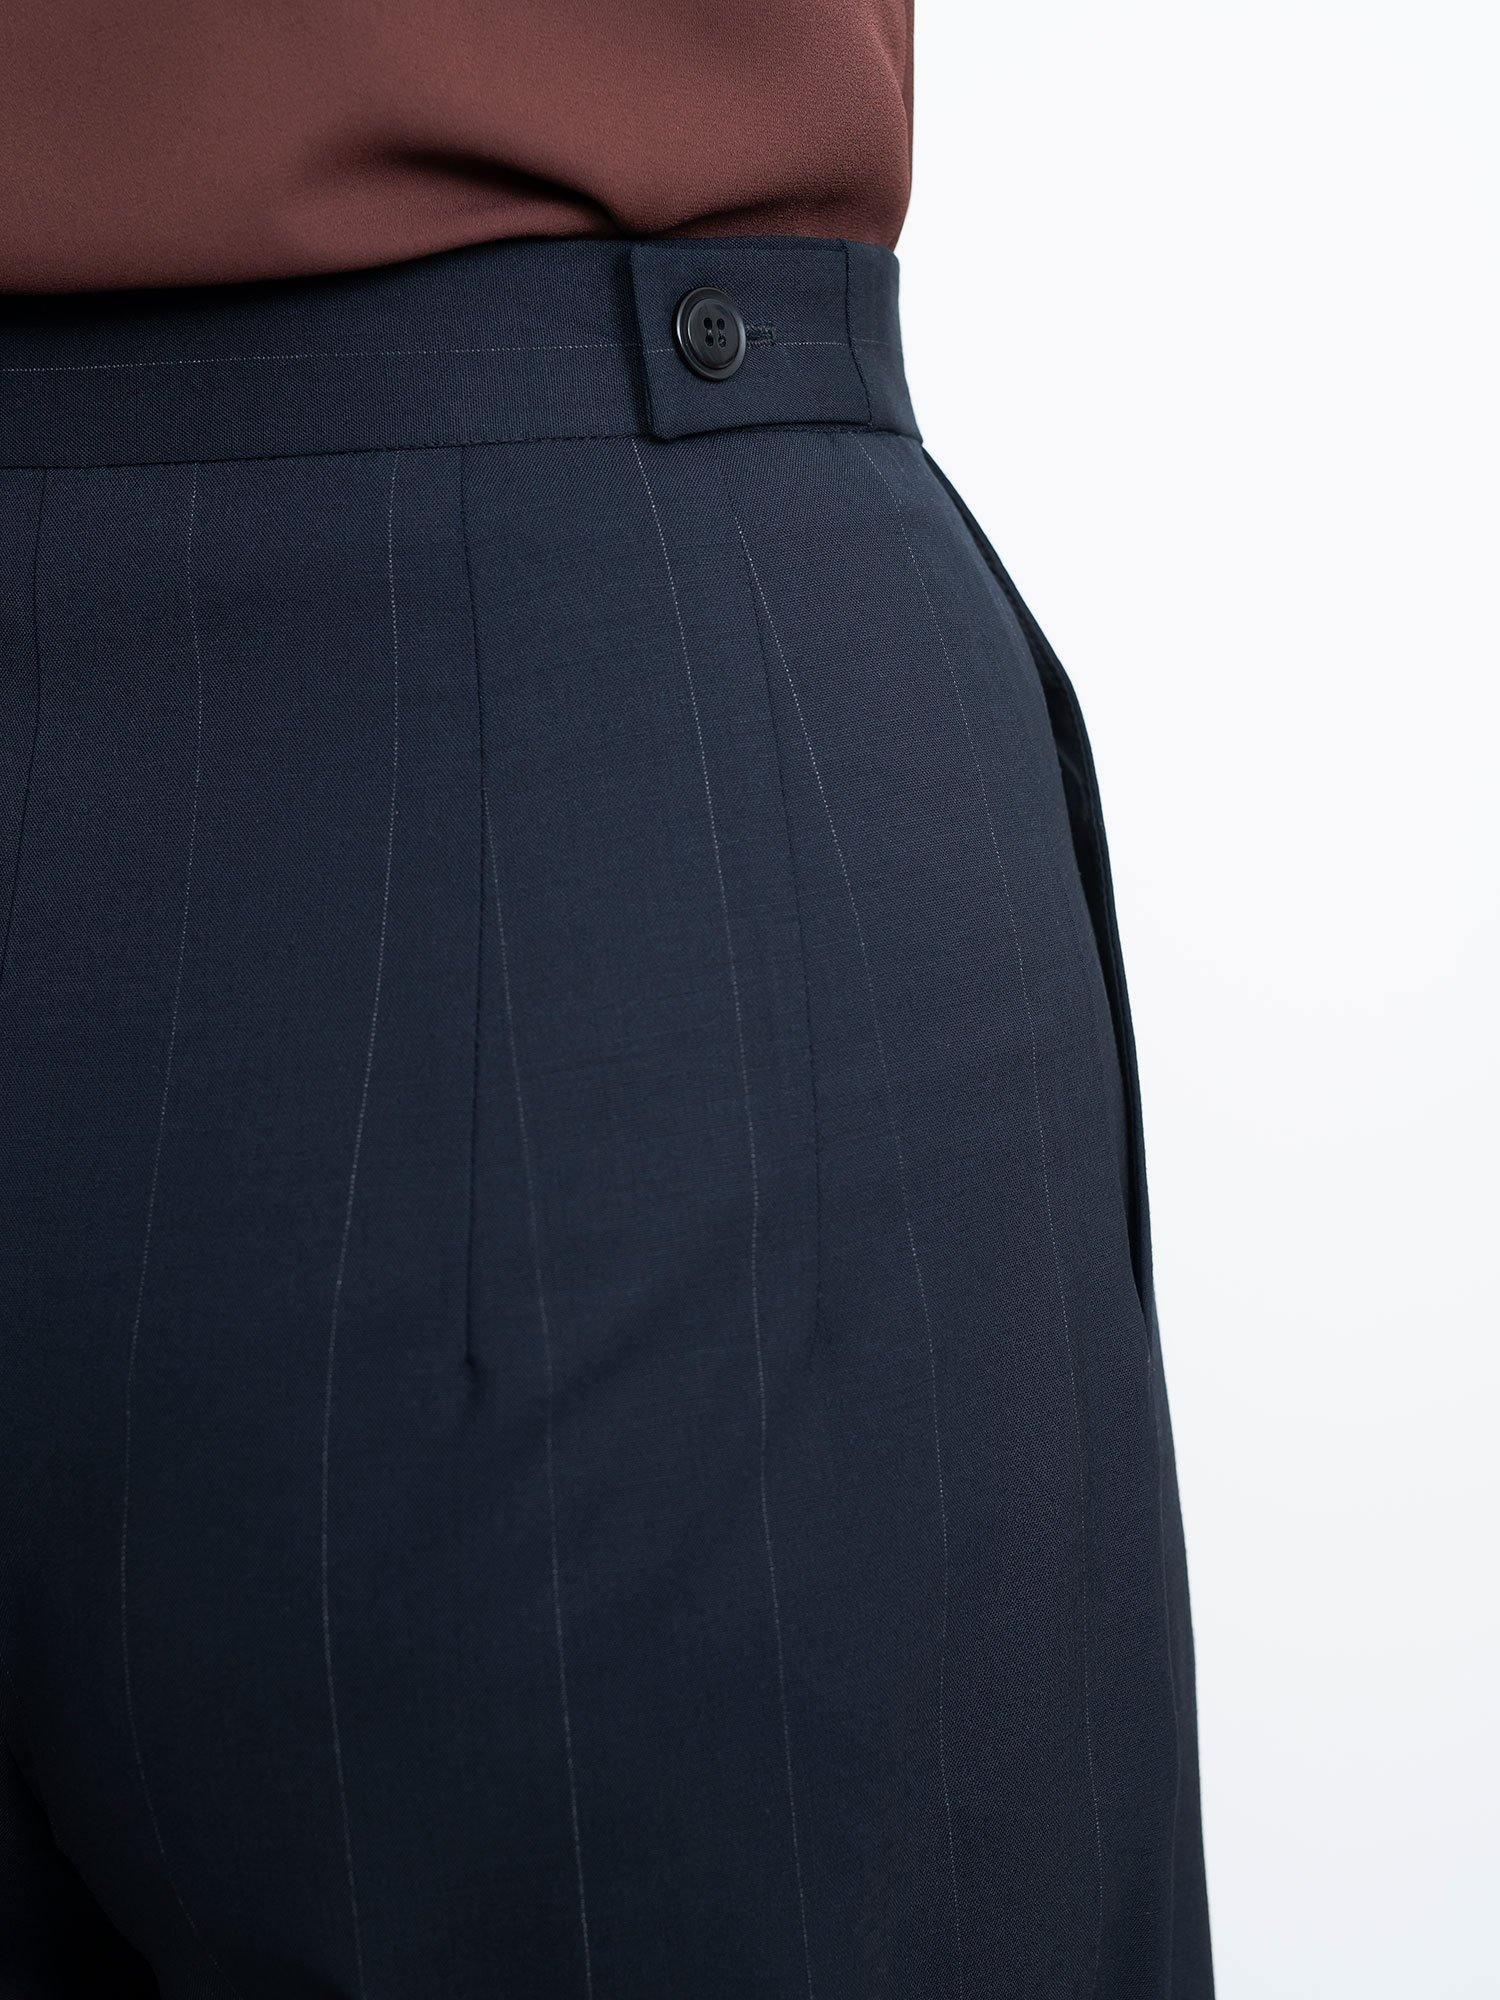 High Waisted Woven Trousers - Zeelas Apparel & Design